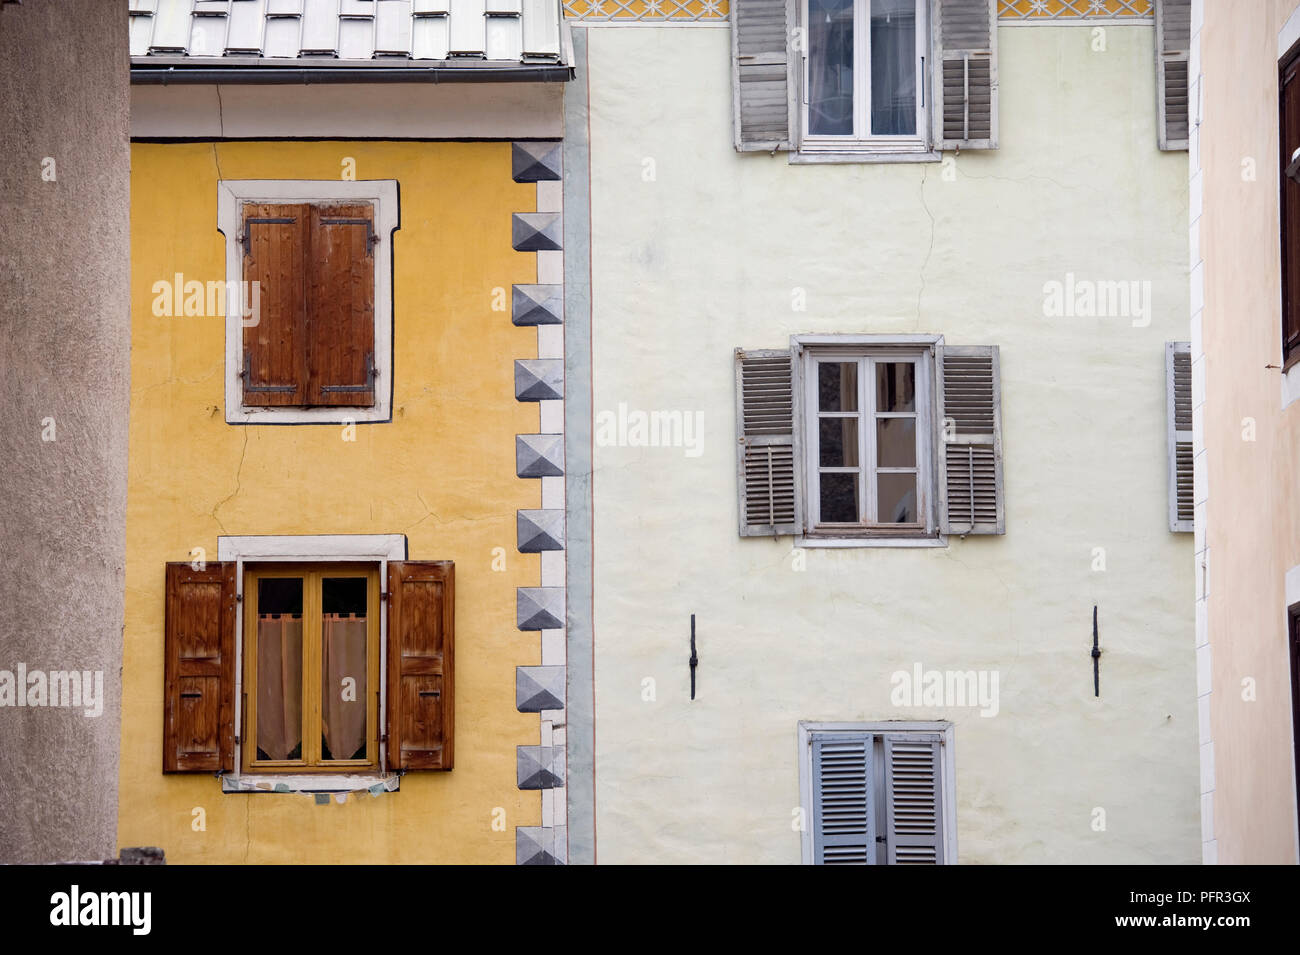 Frankreich, Zitieren Vauban, Place d'Armes, Fassade von Gebäuden mit öffnet und geschlossenen Fensterläden, close-up Stockfoto